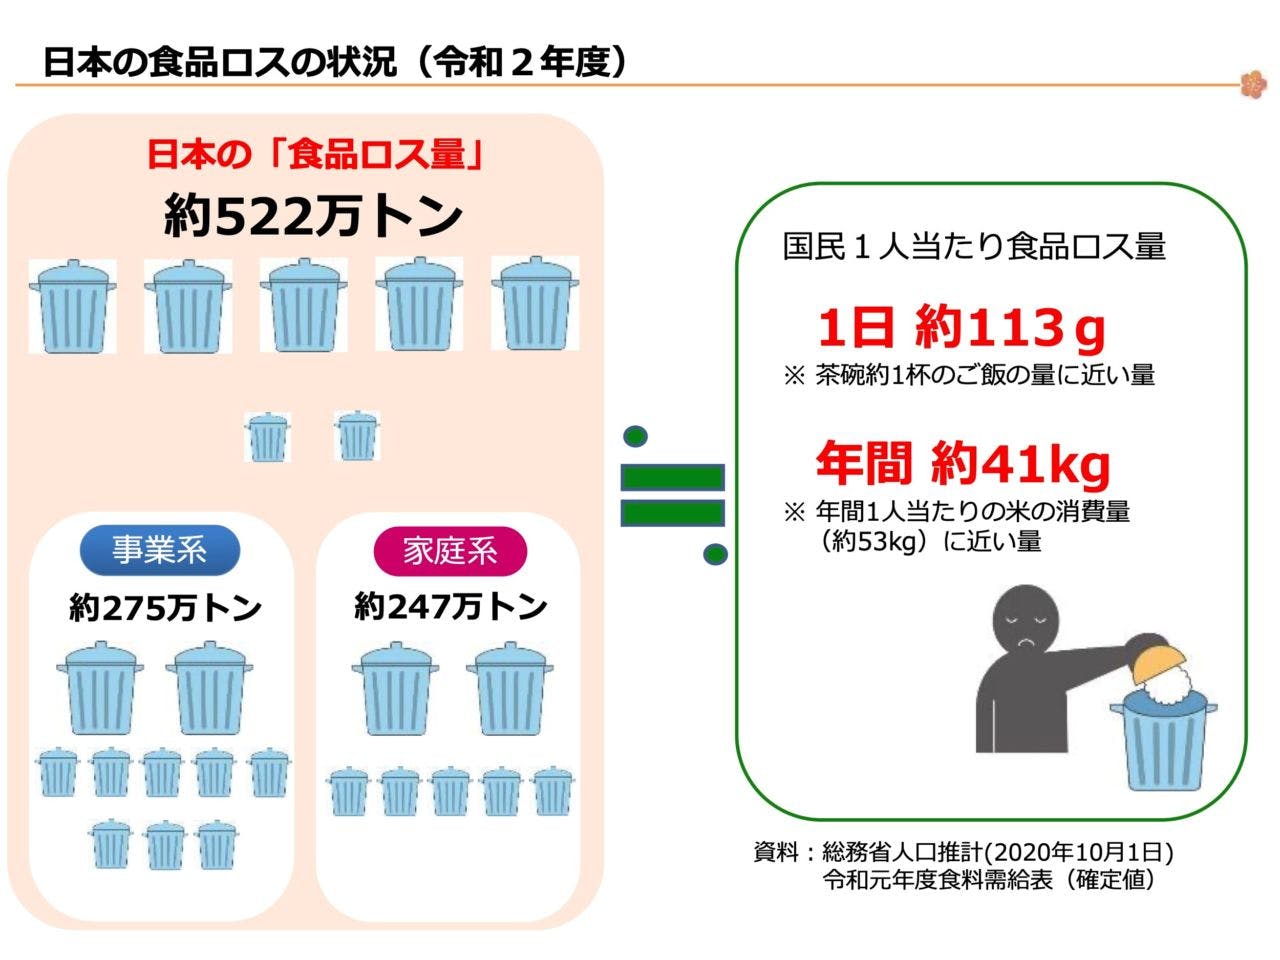 令和2年度における日本の食品ロスの状況